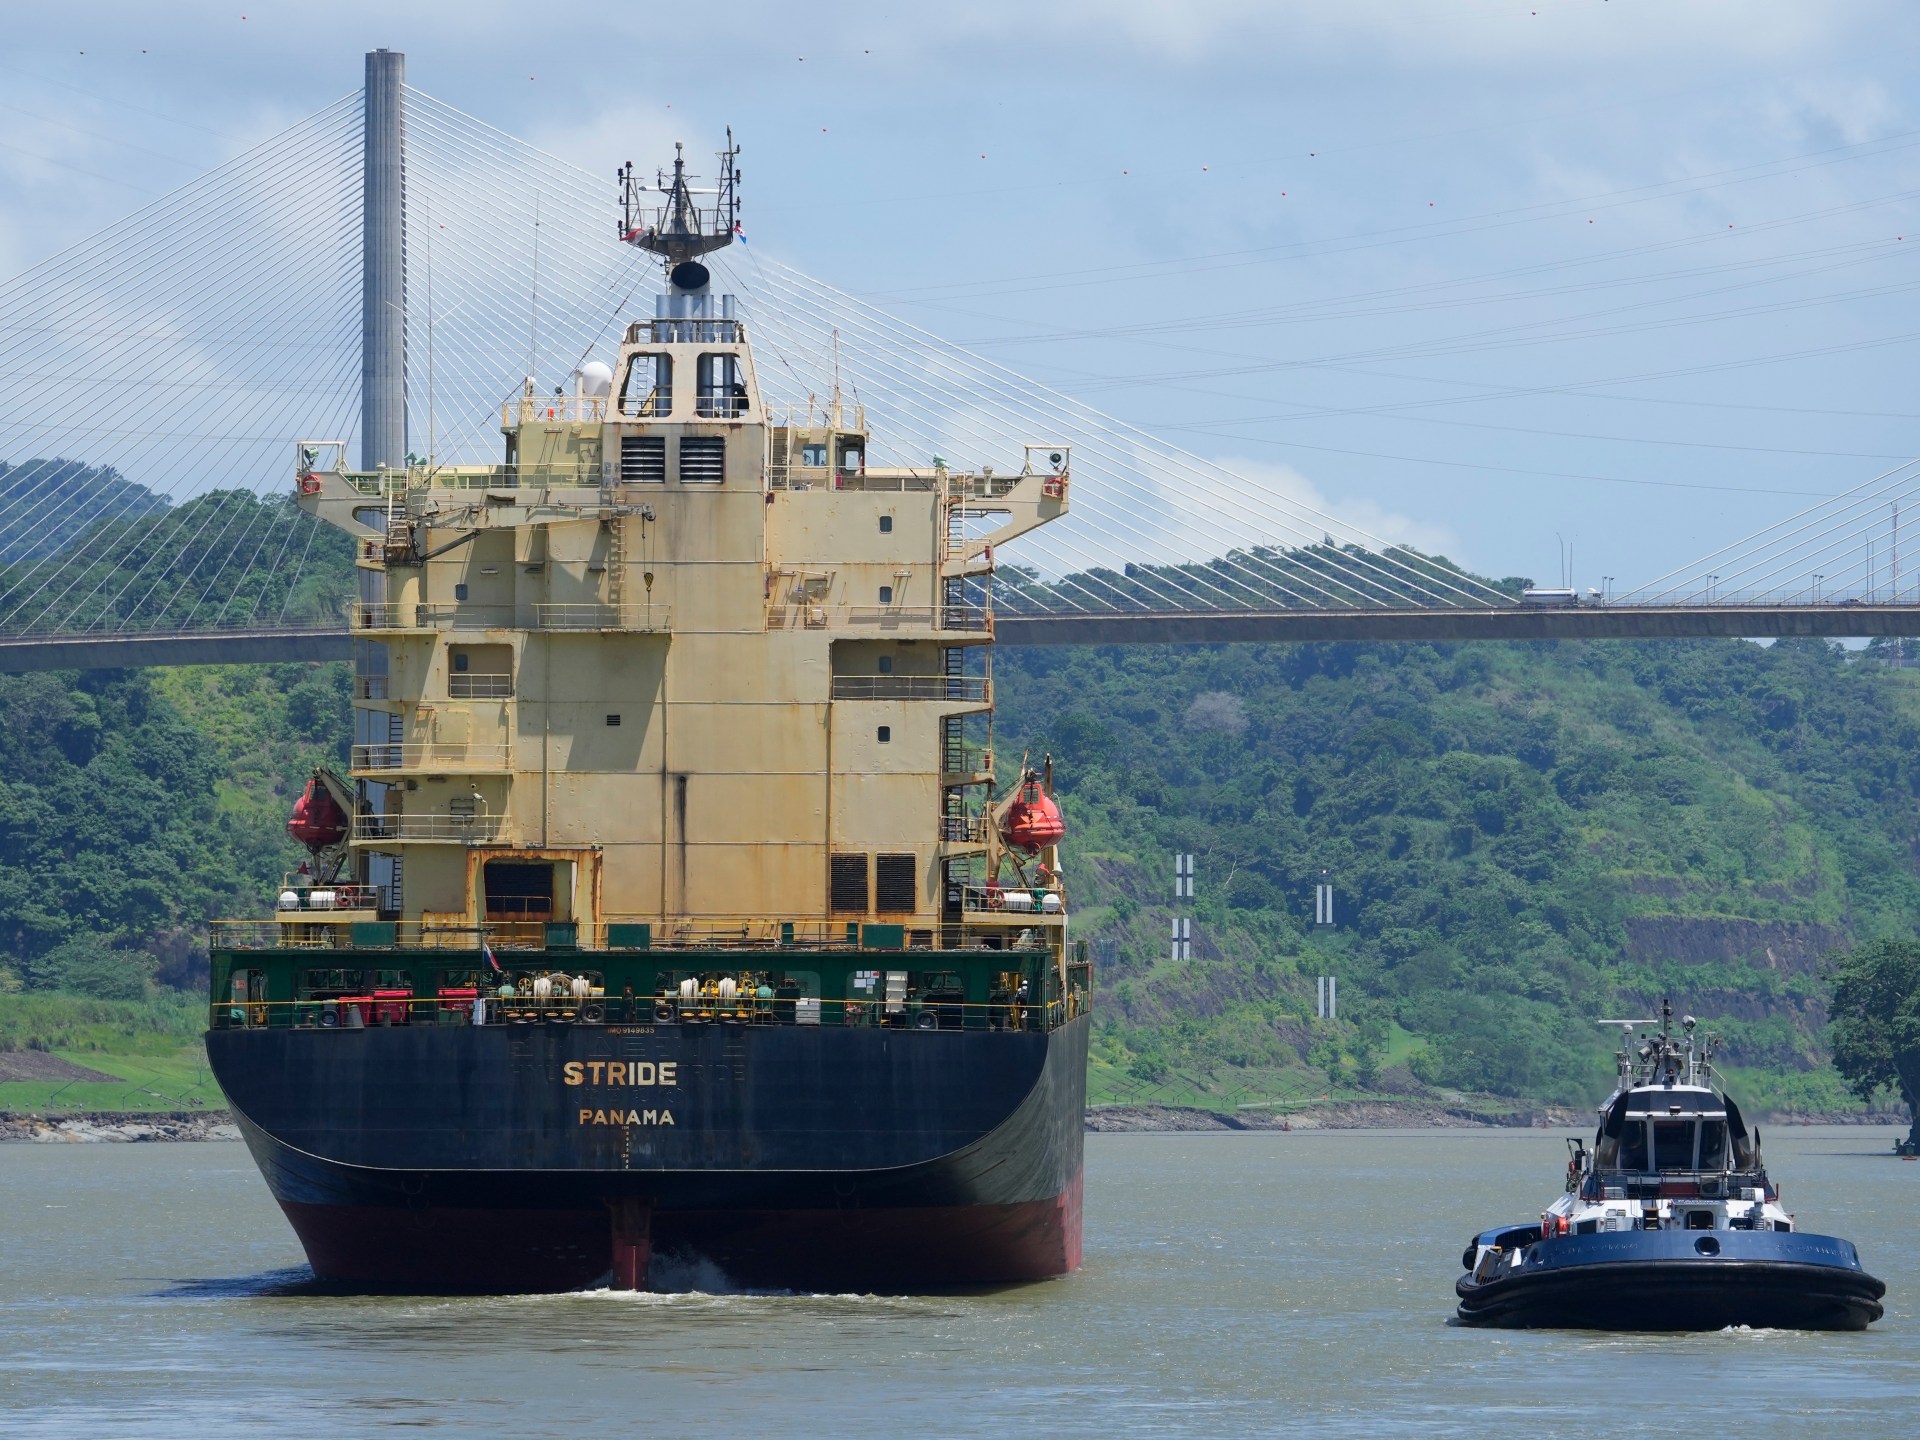 Desde plátanos hasta GNL, el retraso en el Canal de Panamá tiene implicaciones de amplio alcance  Noticias empresariales y económicas.